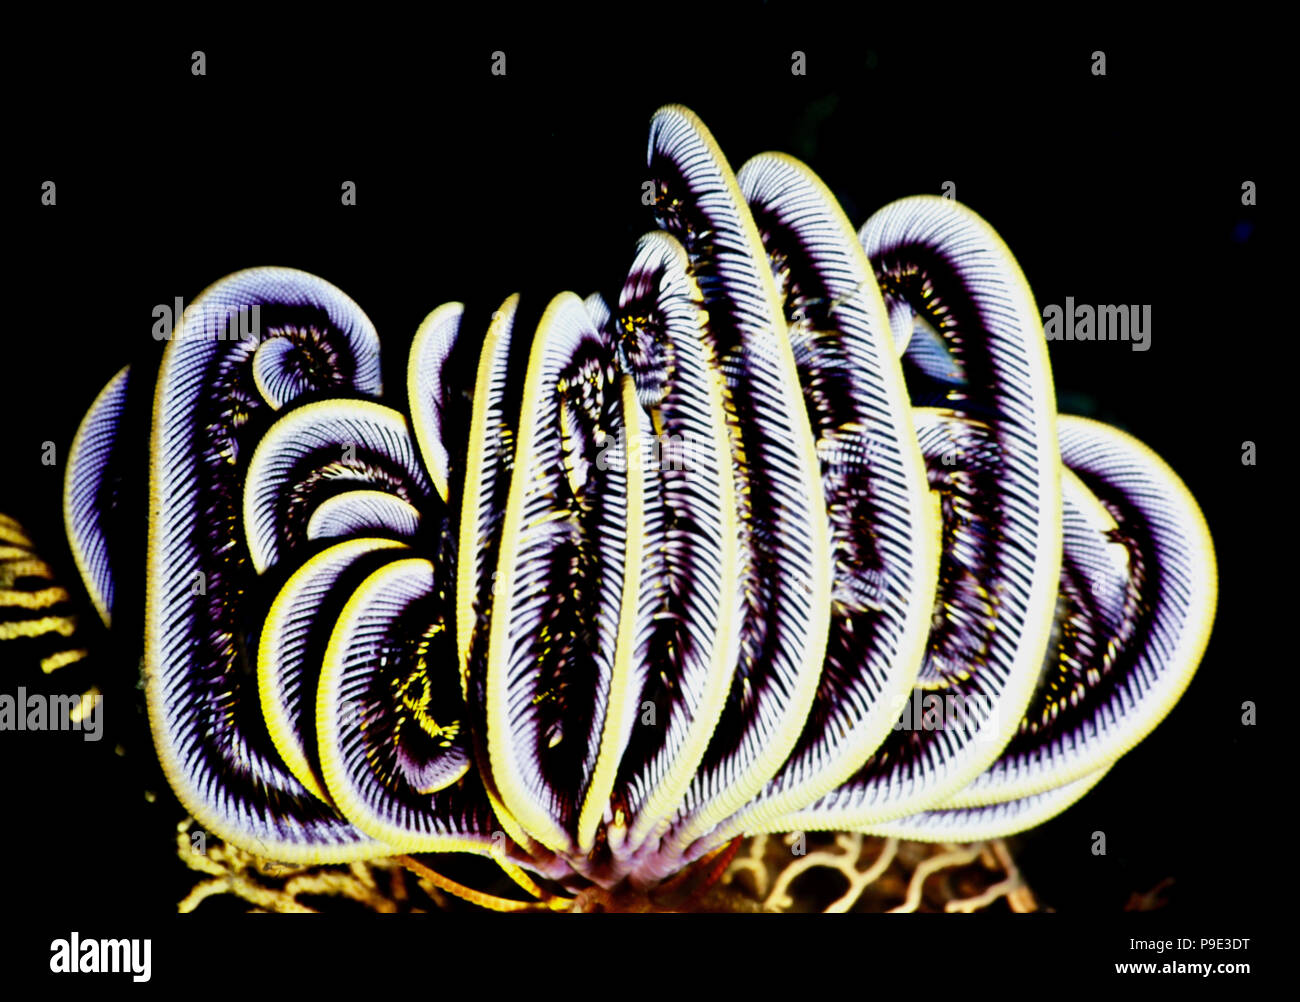 Un dente di sega featherstar (Oligometra serripinna: diametro 12 cm.). Quando non vi è alcuna corrente, l'animale si ripiega le sue braccia e il suo appoggio - come in questo caso - spesso la formazione di un pattern di notevole bellezza. Quando la corrente riprende, si diffonde i suoi bracci ampiamente per raggiungere passando microplankton. La preda viene quindi trasferito alla bocca centrale. Featherstars di fissarsi al substrato per mezzo di root-come appendici, che essi utilizzano anche in 'a piedi". Se si desidera spostare più rapidamente o percorrere distanze, nuotano per mezzo di grazioso ondulazioni di loro molte armi. Bali, Indonesia. Foto Stock